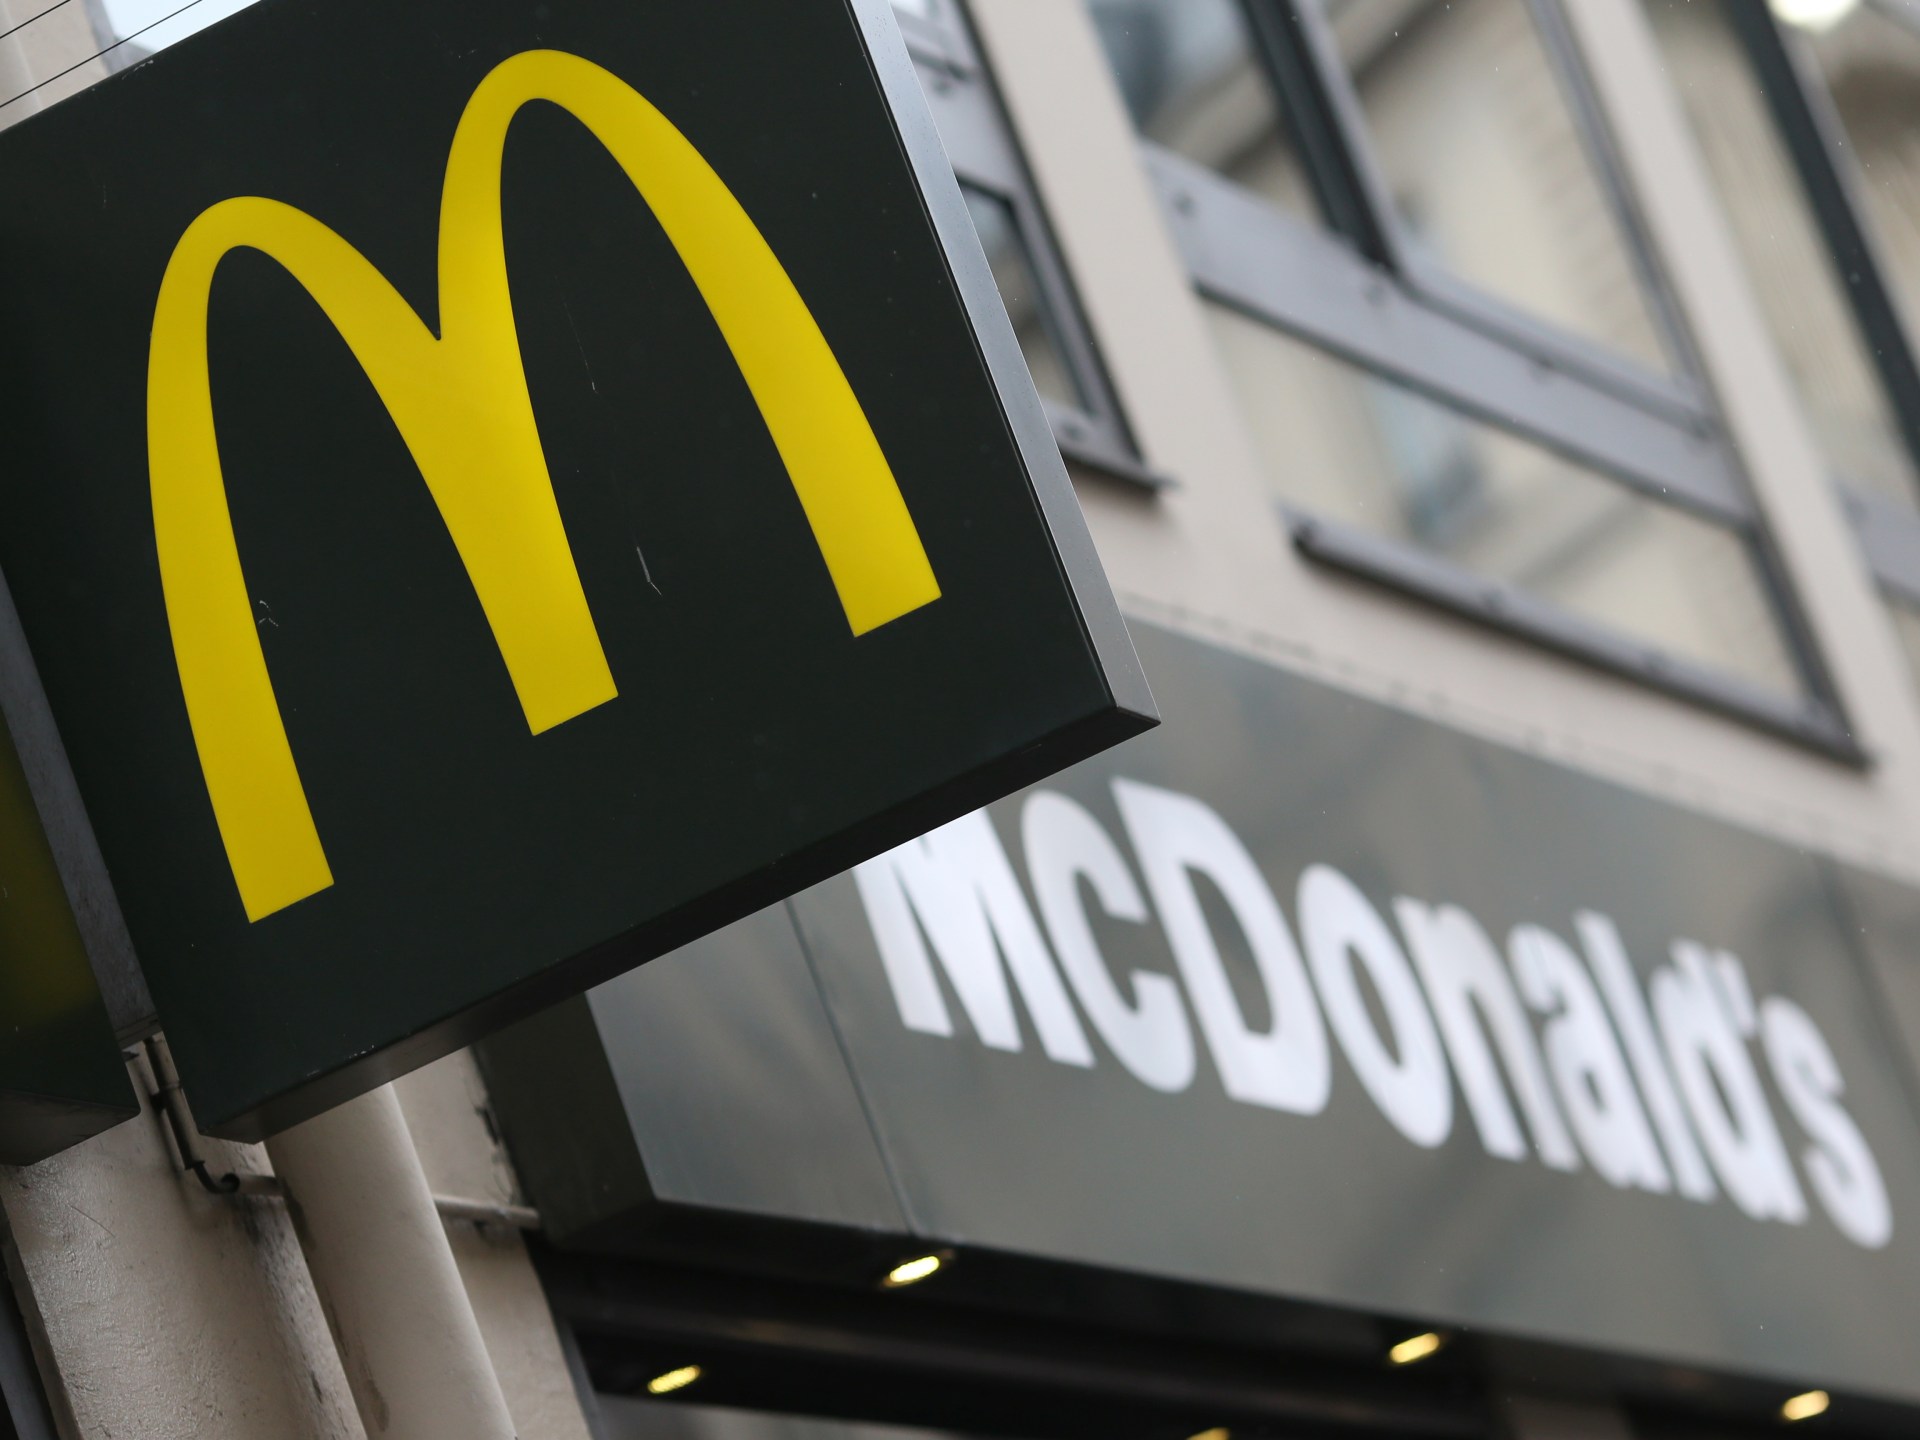 ماكدونالدز تقر بتأثر أعمالها بأسواق الشرق الأوسط إثر حرب غزة